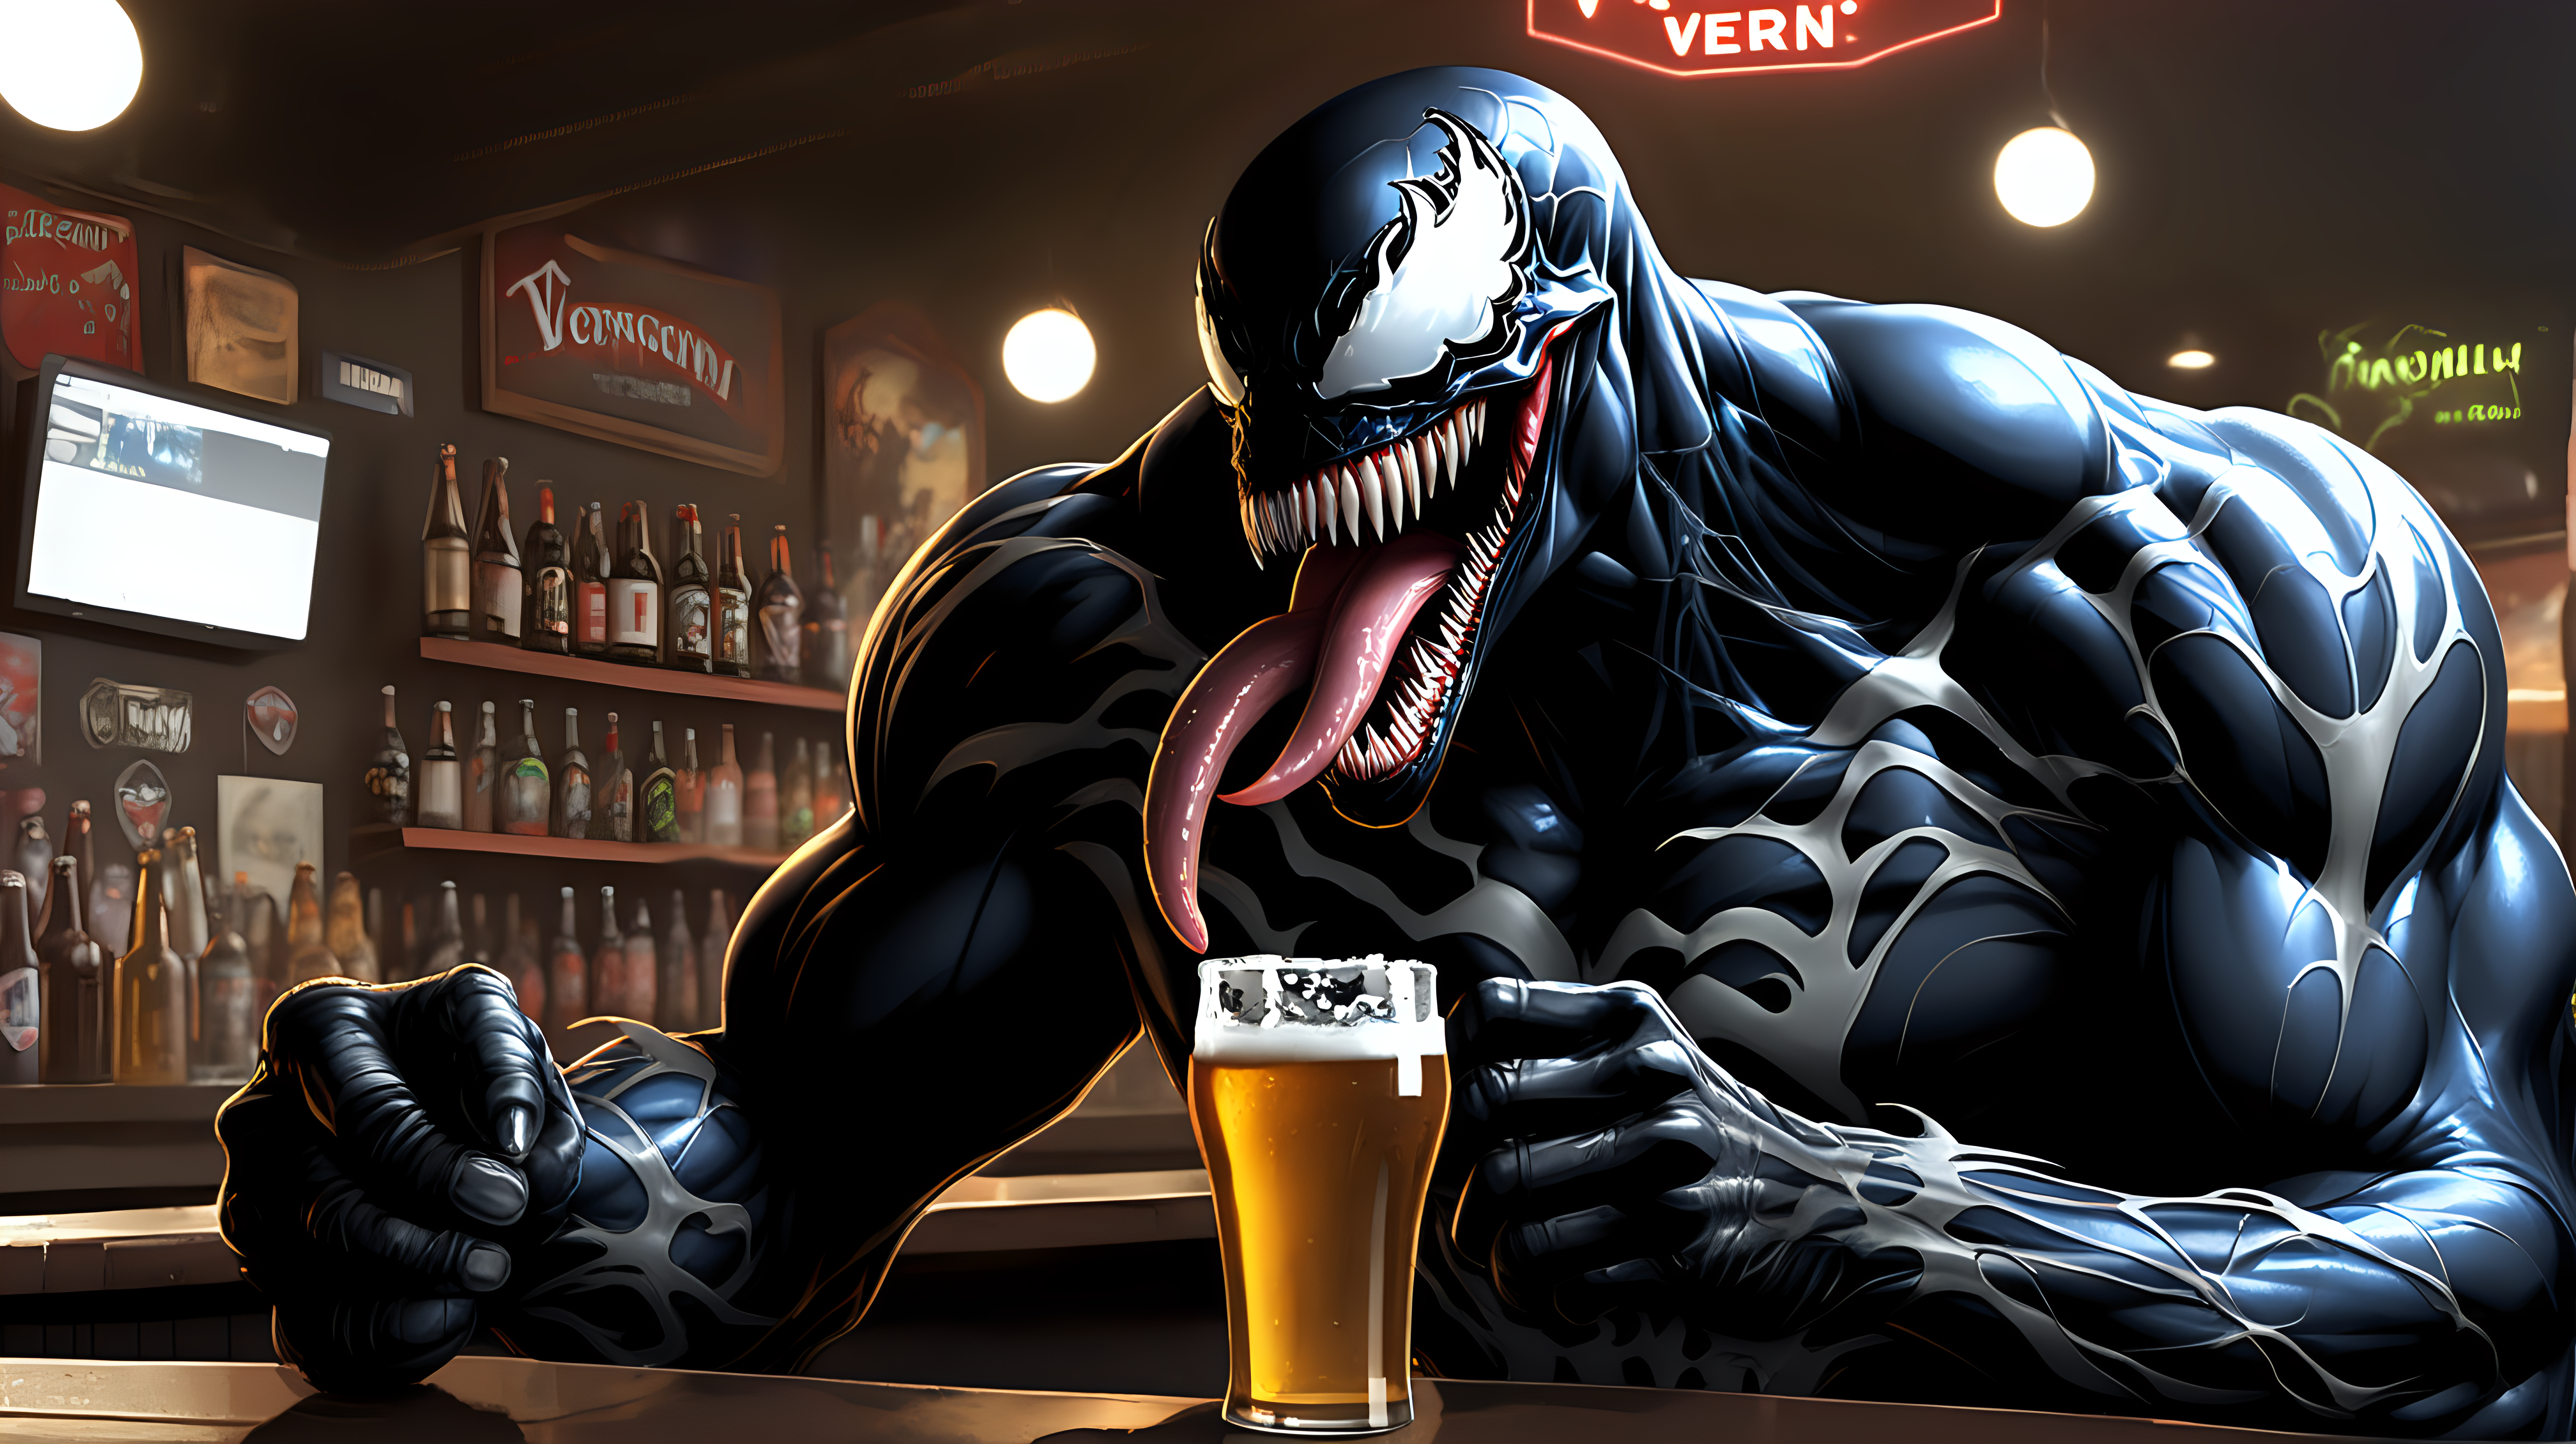 Venom drinking a beer at a bar